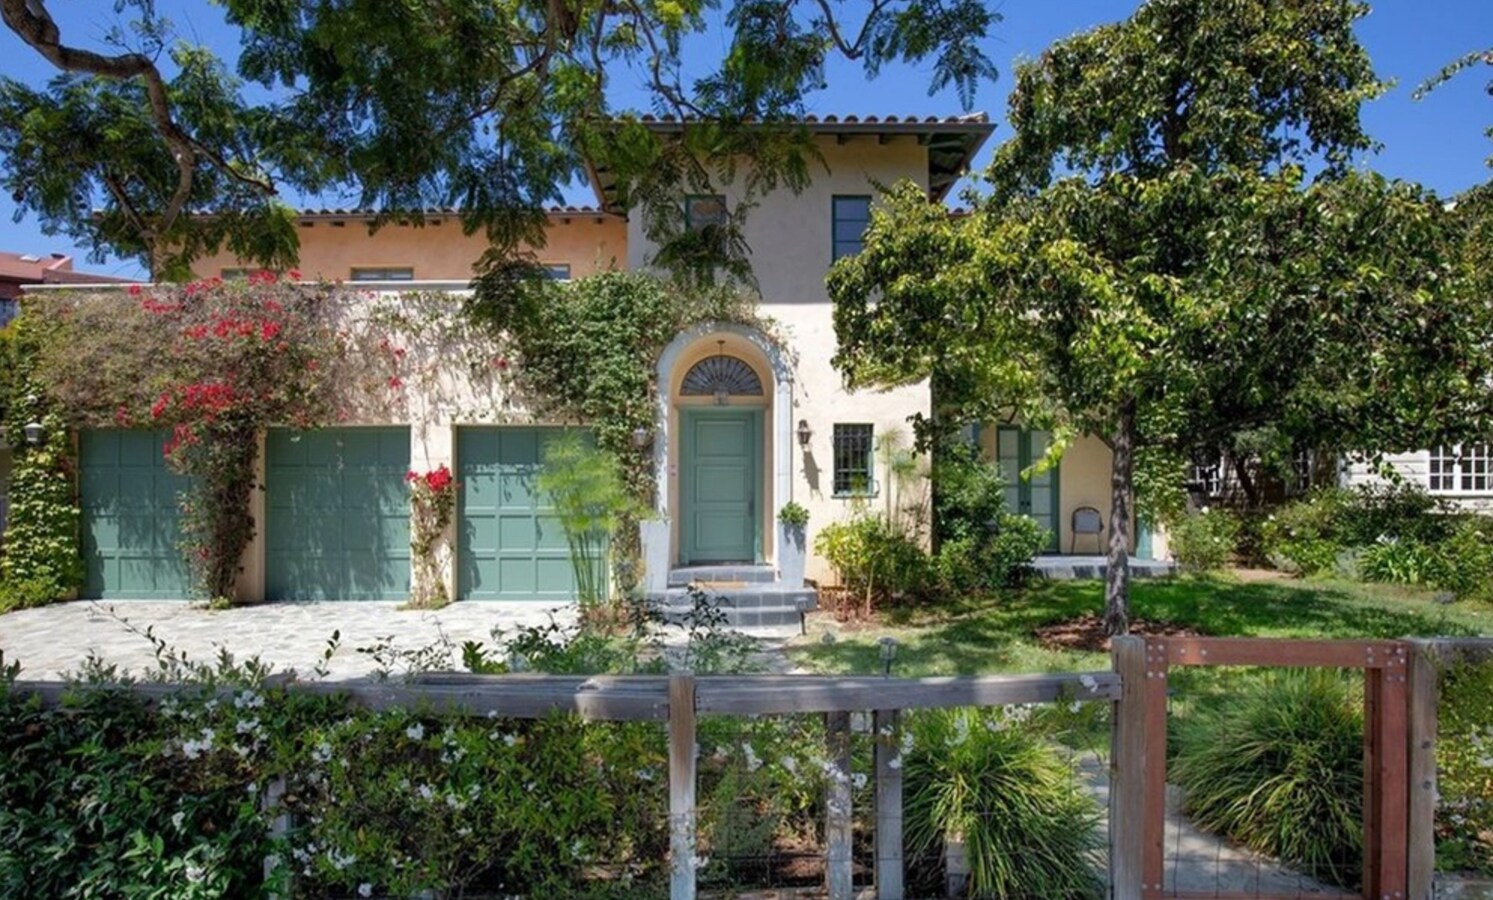 Geena Davis vende su exclusiva mansión mediterránea por 5 millones al mejor postor